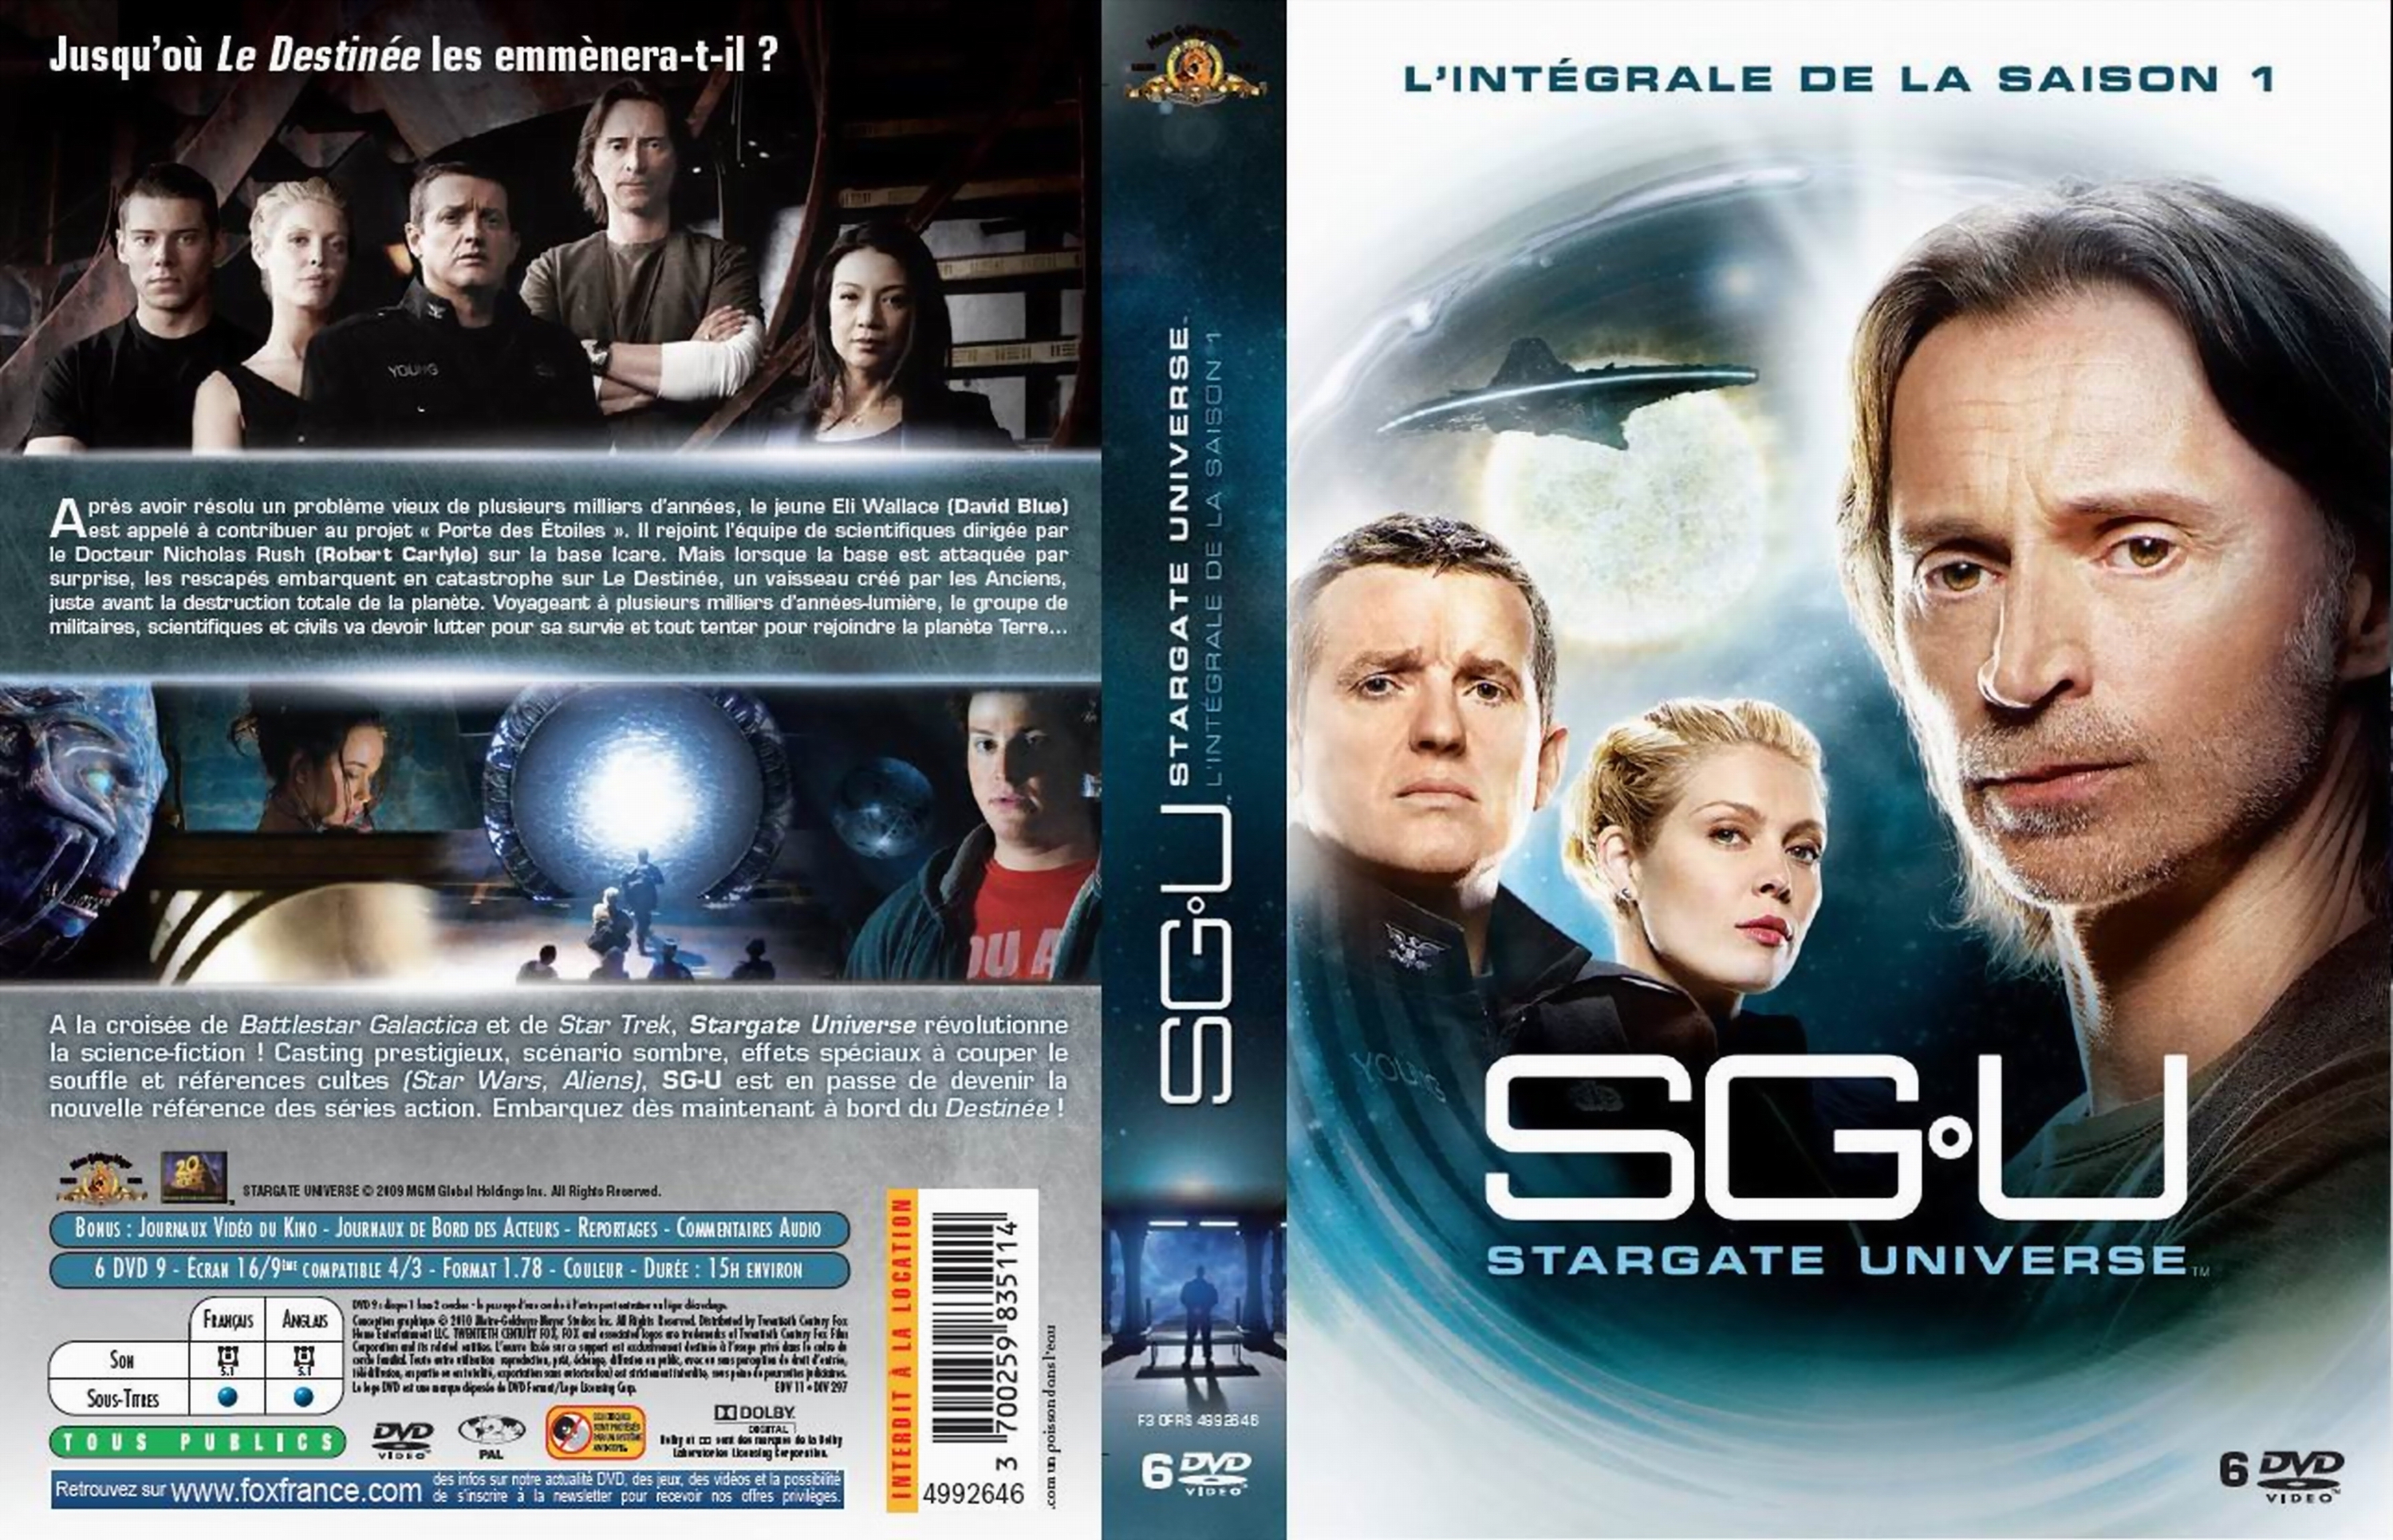 Jaquette DVD Stargate Universe Saison 1 COFFRET